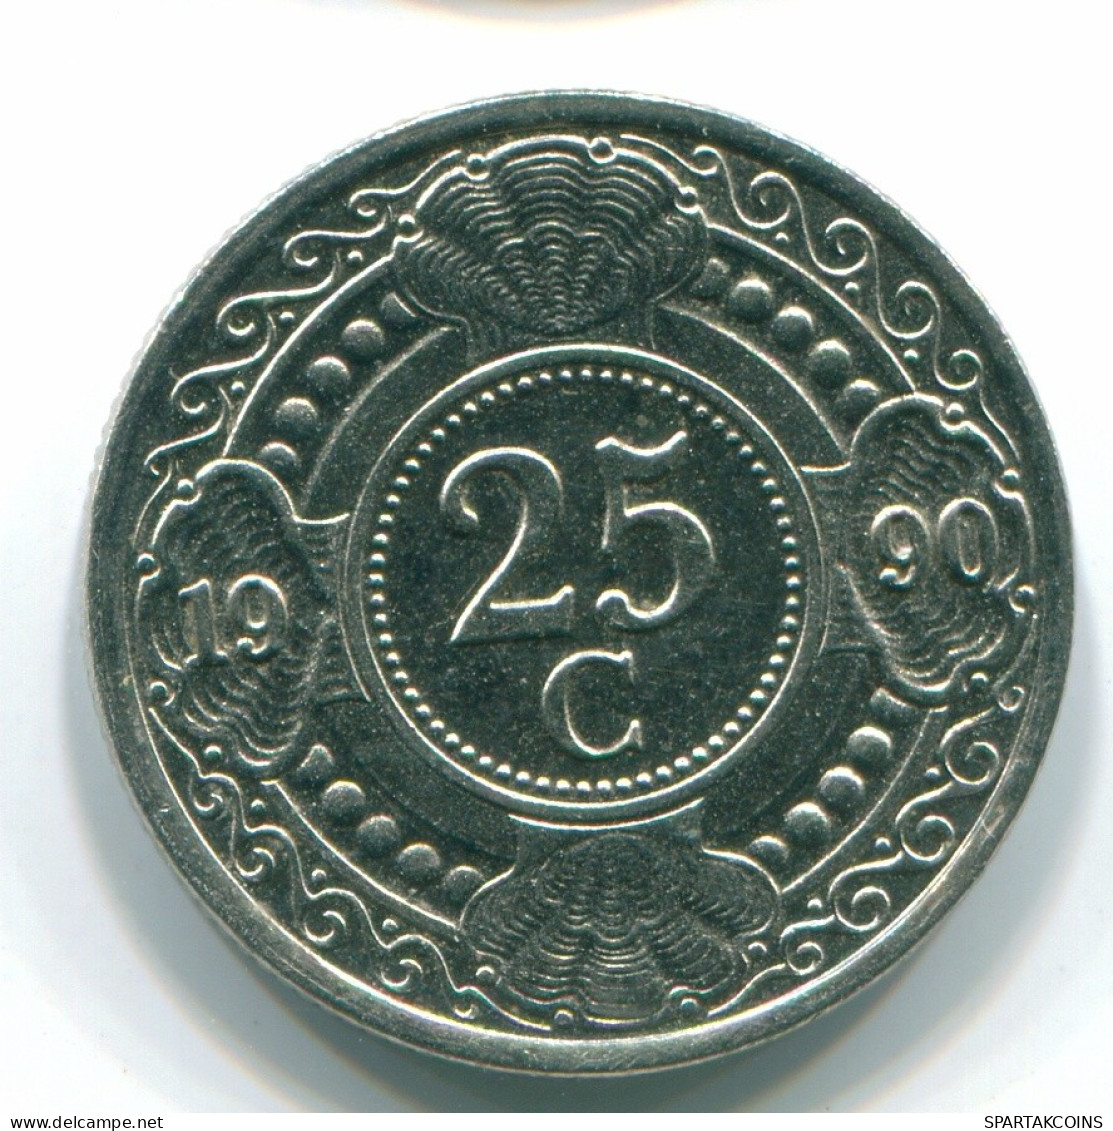 25 CENTS 1990 NIEDERLÄNDISCHE ANTILLEN Nickel Koloniale Münze #S11260.D.A - Niederländische Antillen